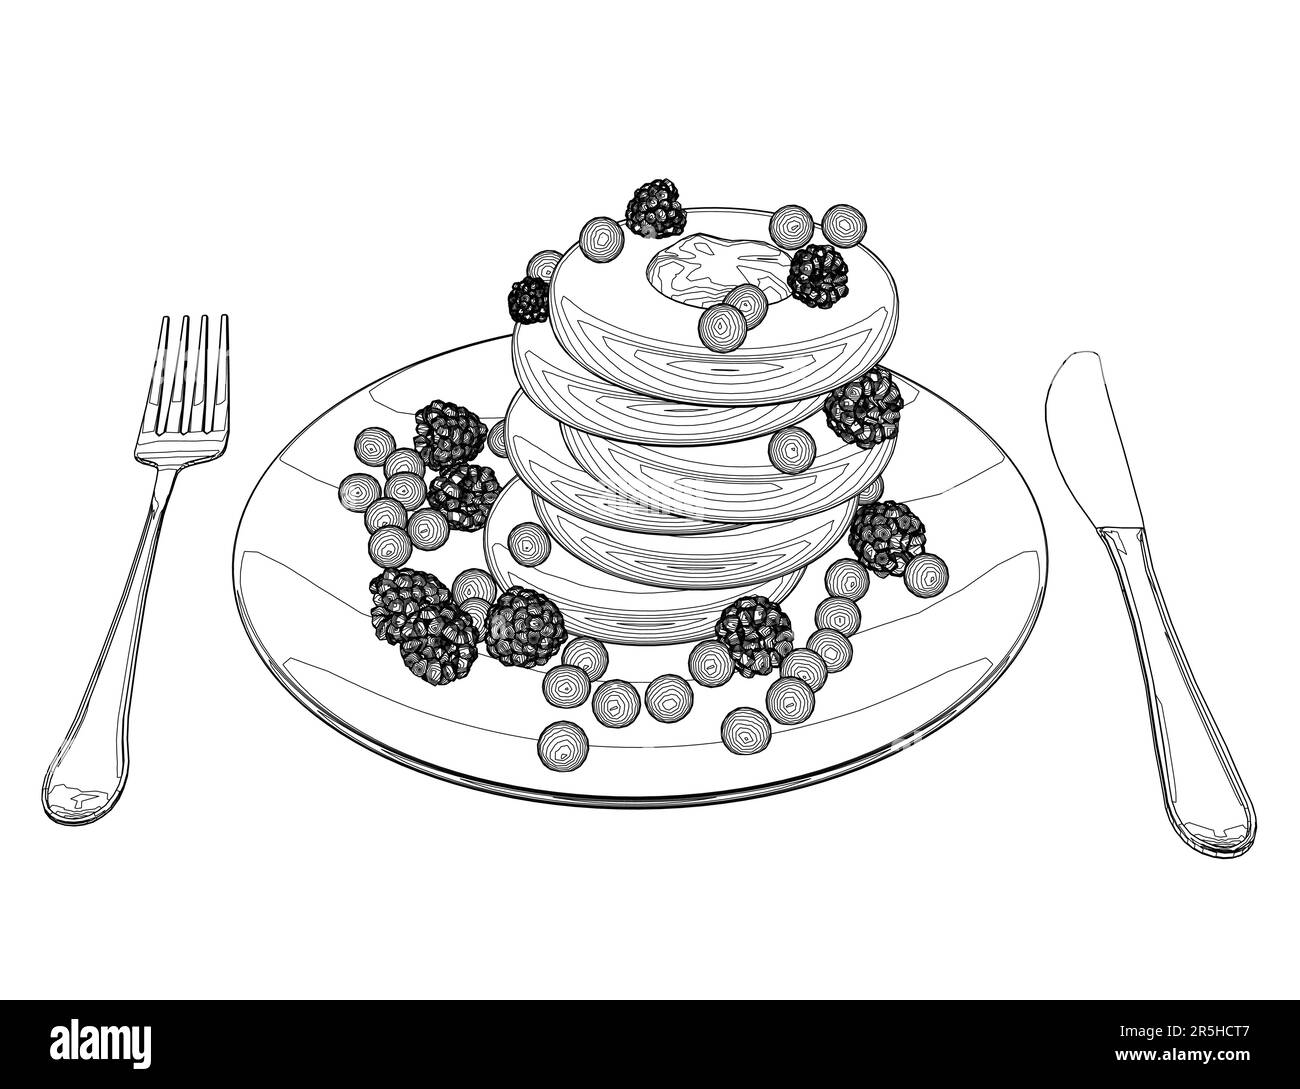 Umriss von Keksen mit Beeren auf einem Teller mit Löffel und Gabel von schwarzen Linien isoliert auf weißem Hintergrund. Nachtisch mit Himbeeren. Isometrisch Stock Vektor